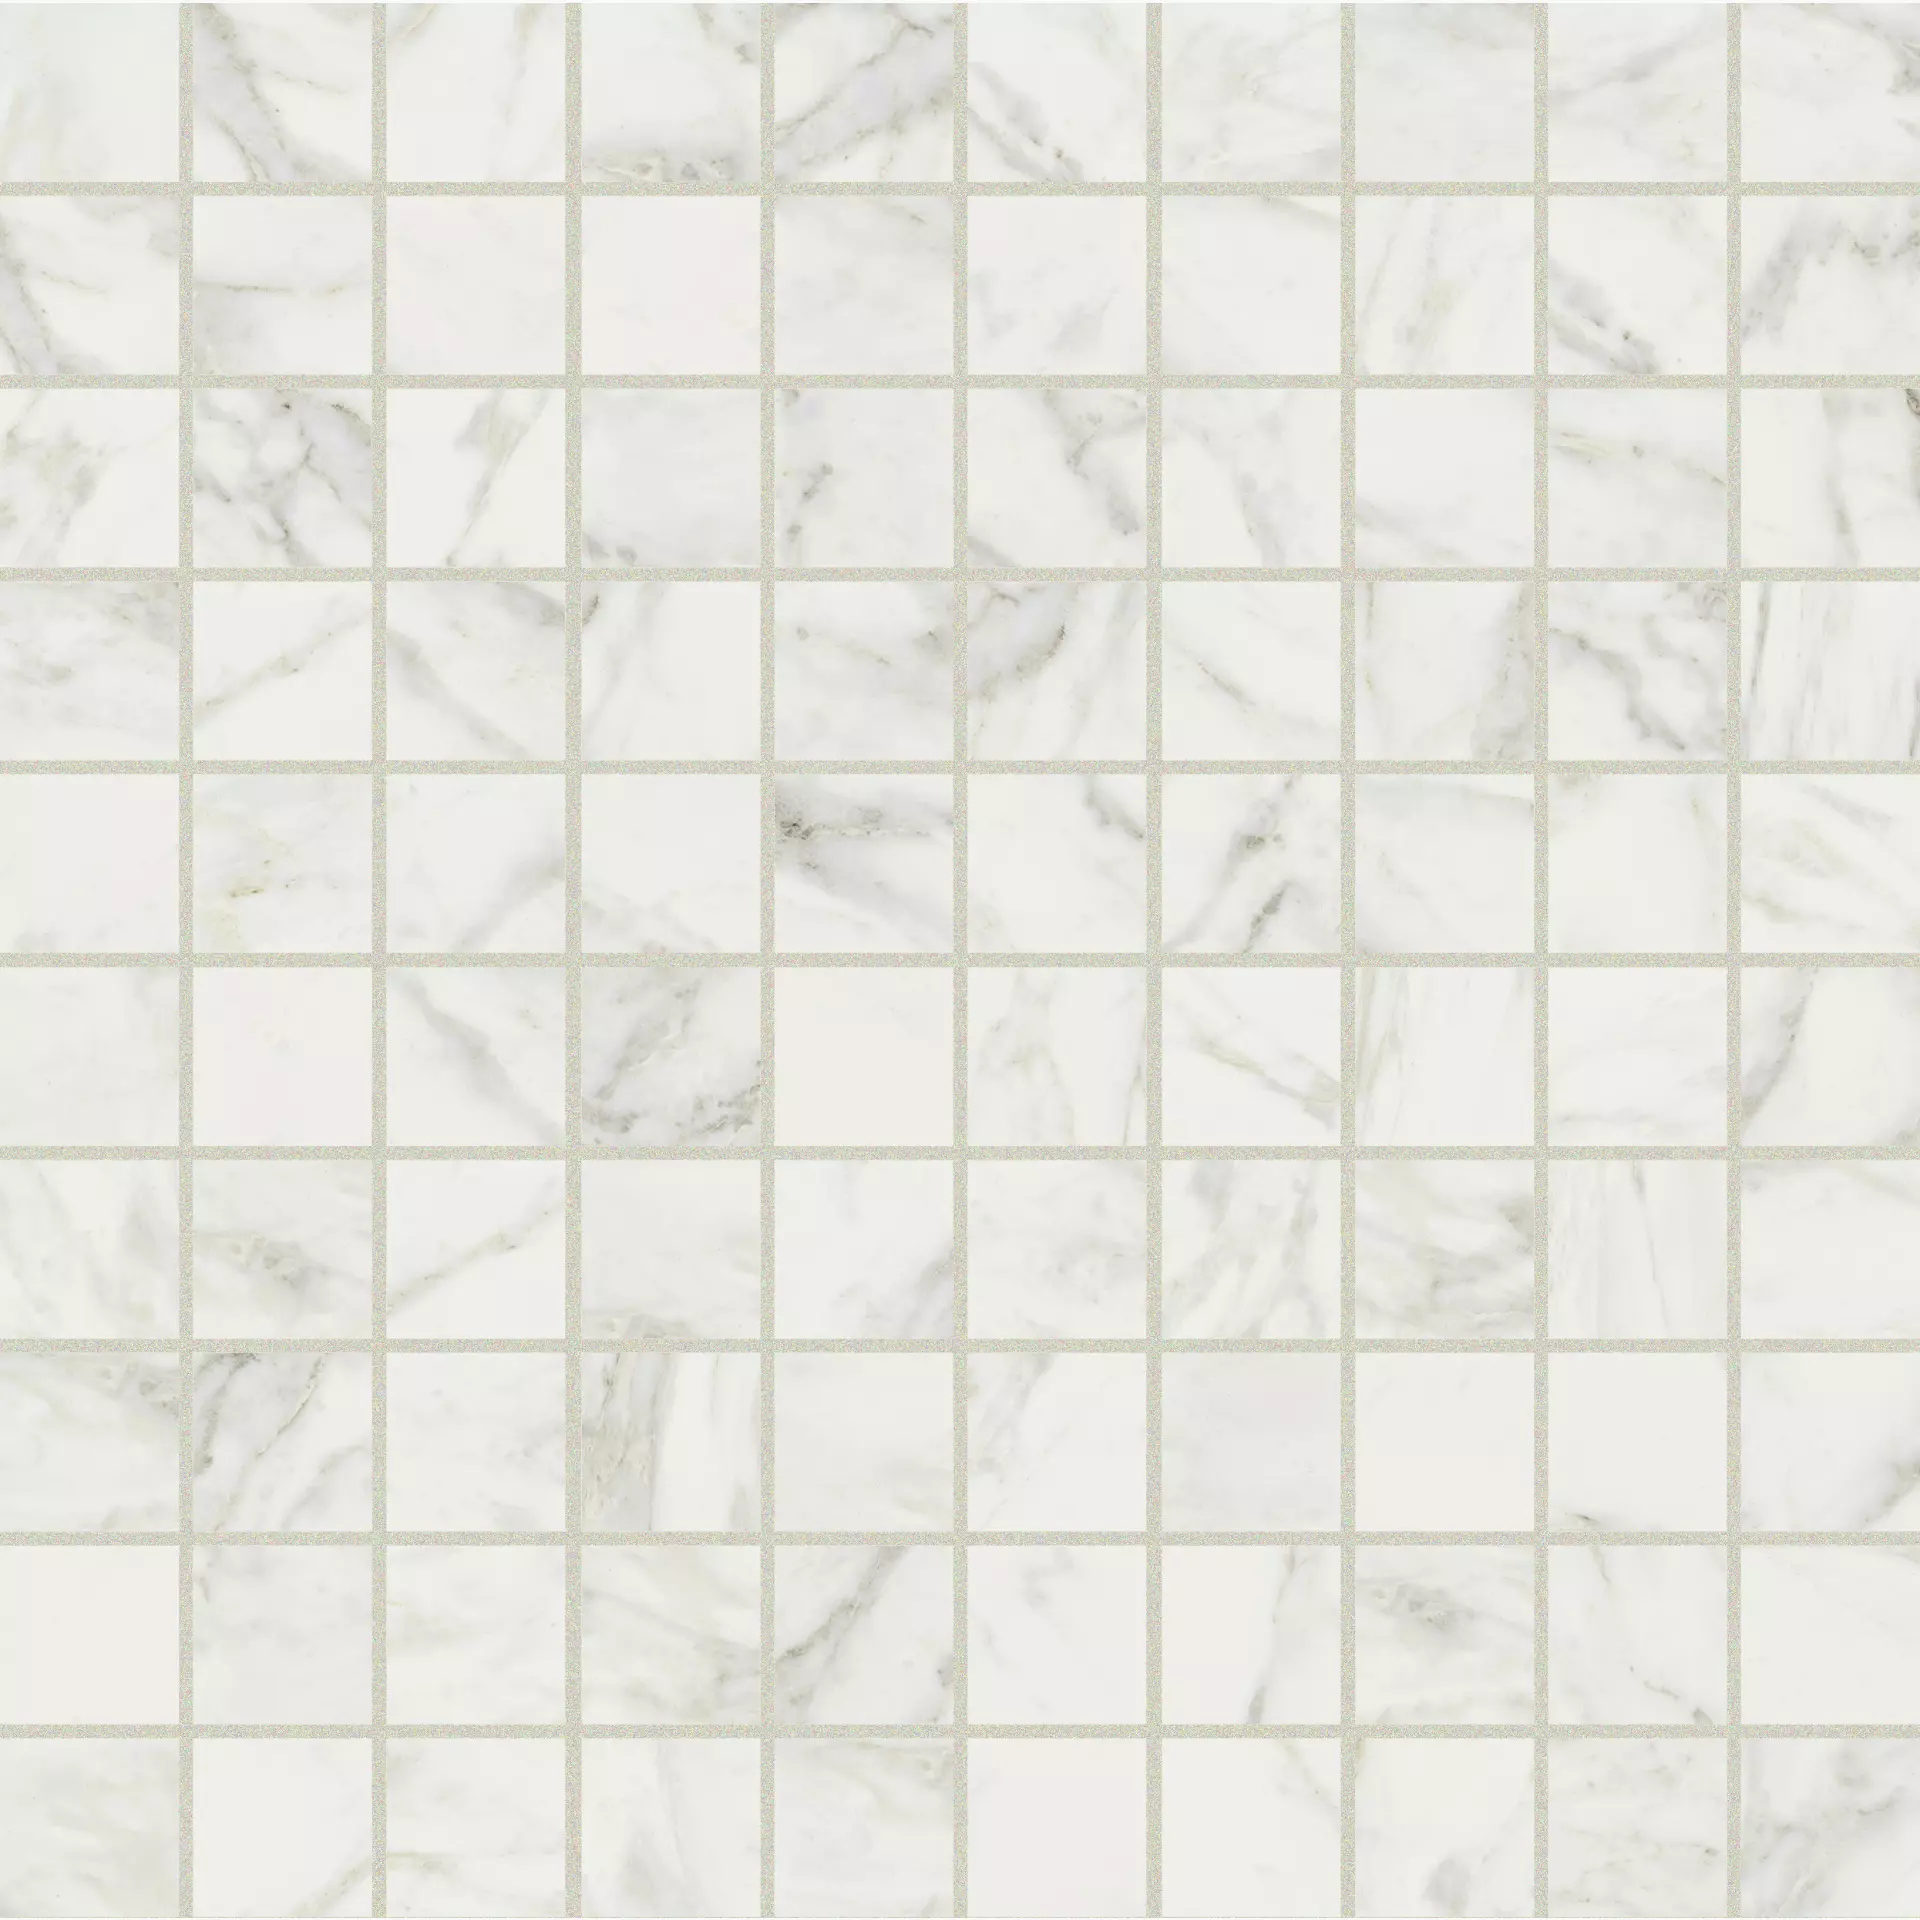 Florim Exalt Of Cerim Magic White Lucido Mosaic 3x3 760956 3x3cm rectified 9mm